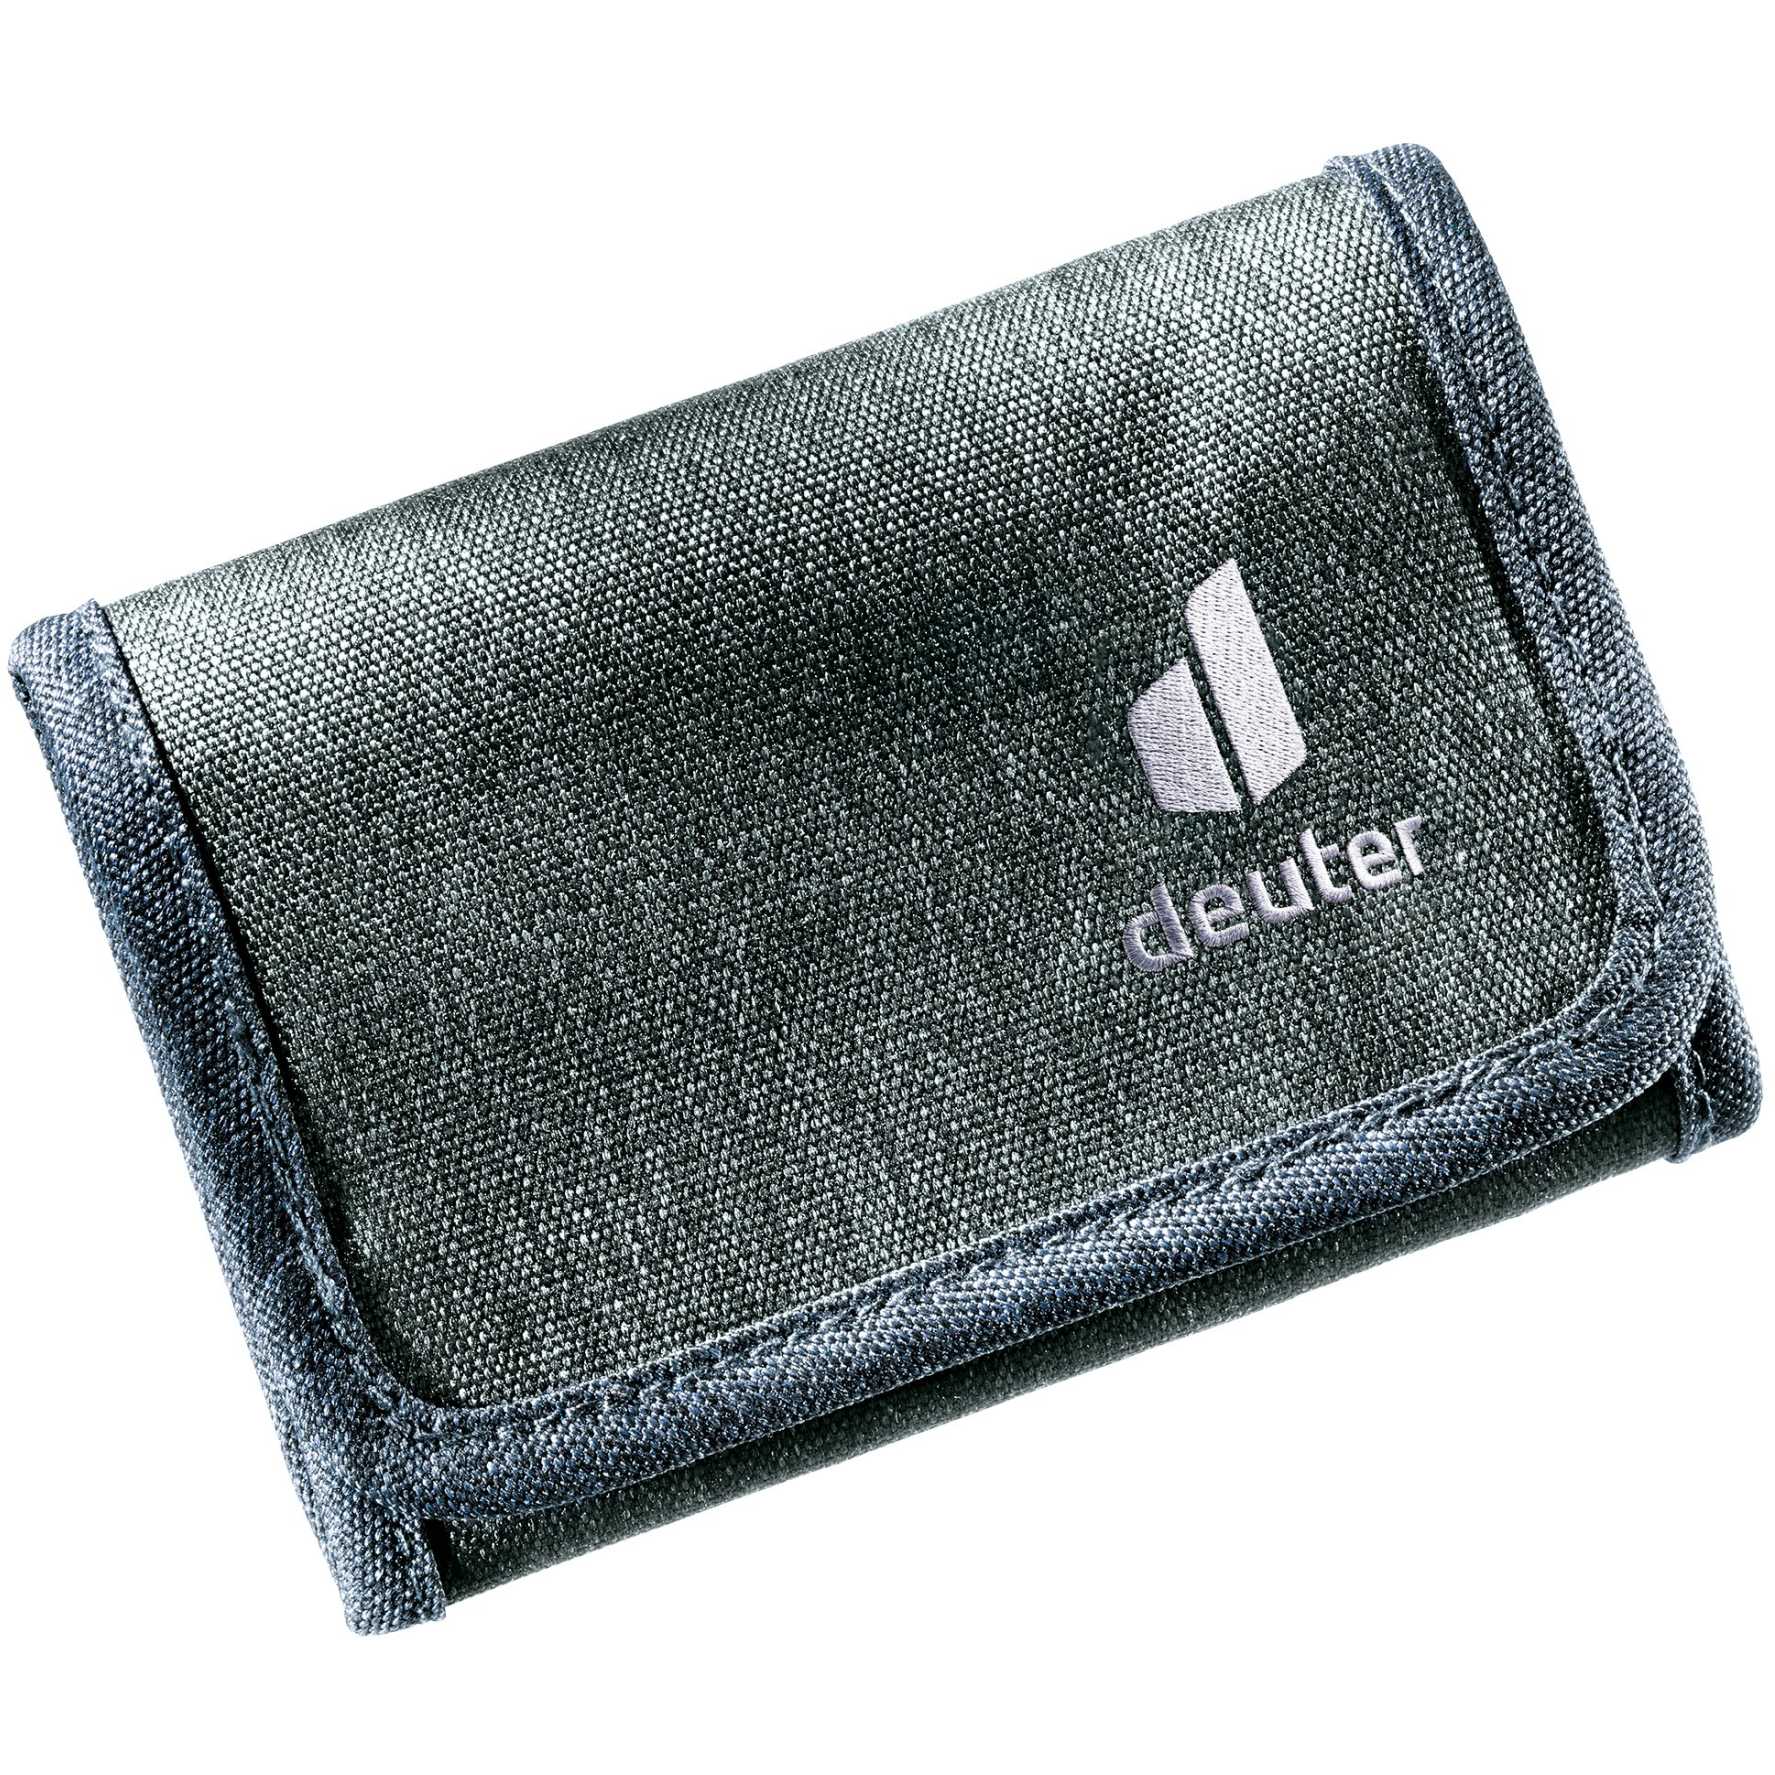 Produktbild von Deuter Travel Wallet Geldbörse - dresscode